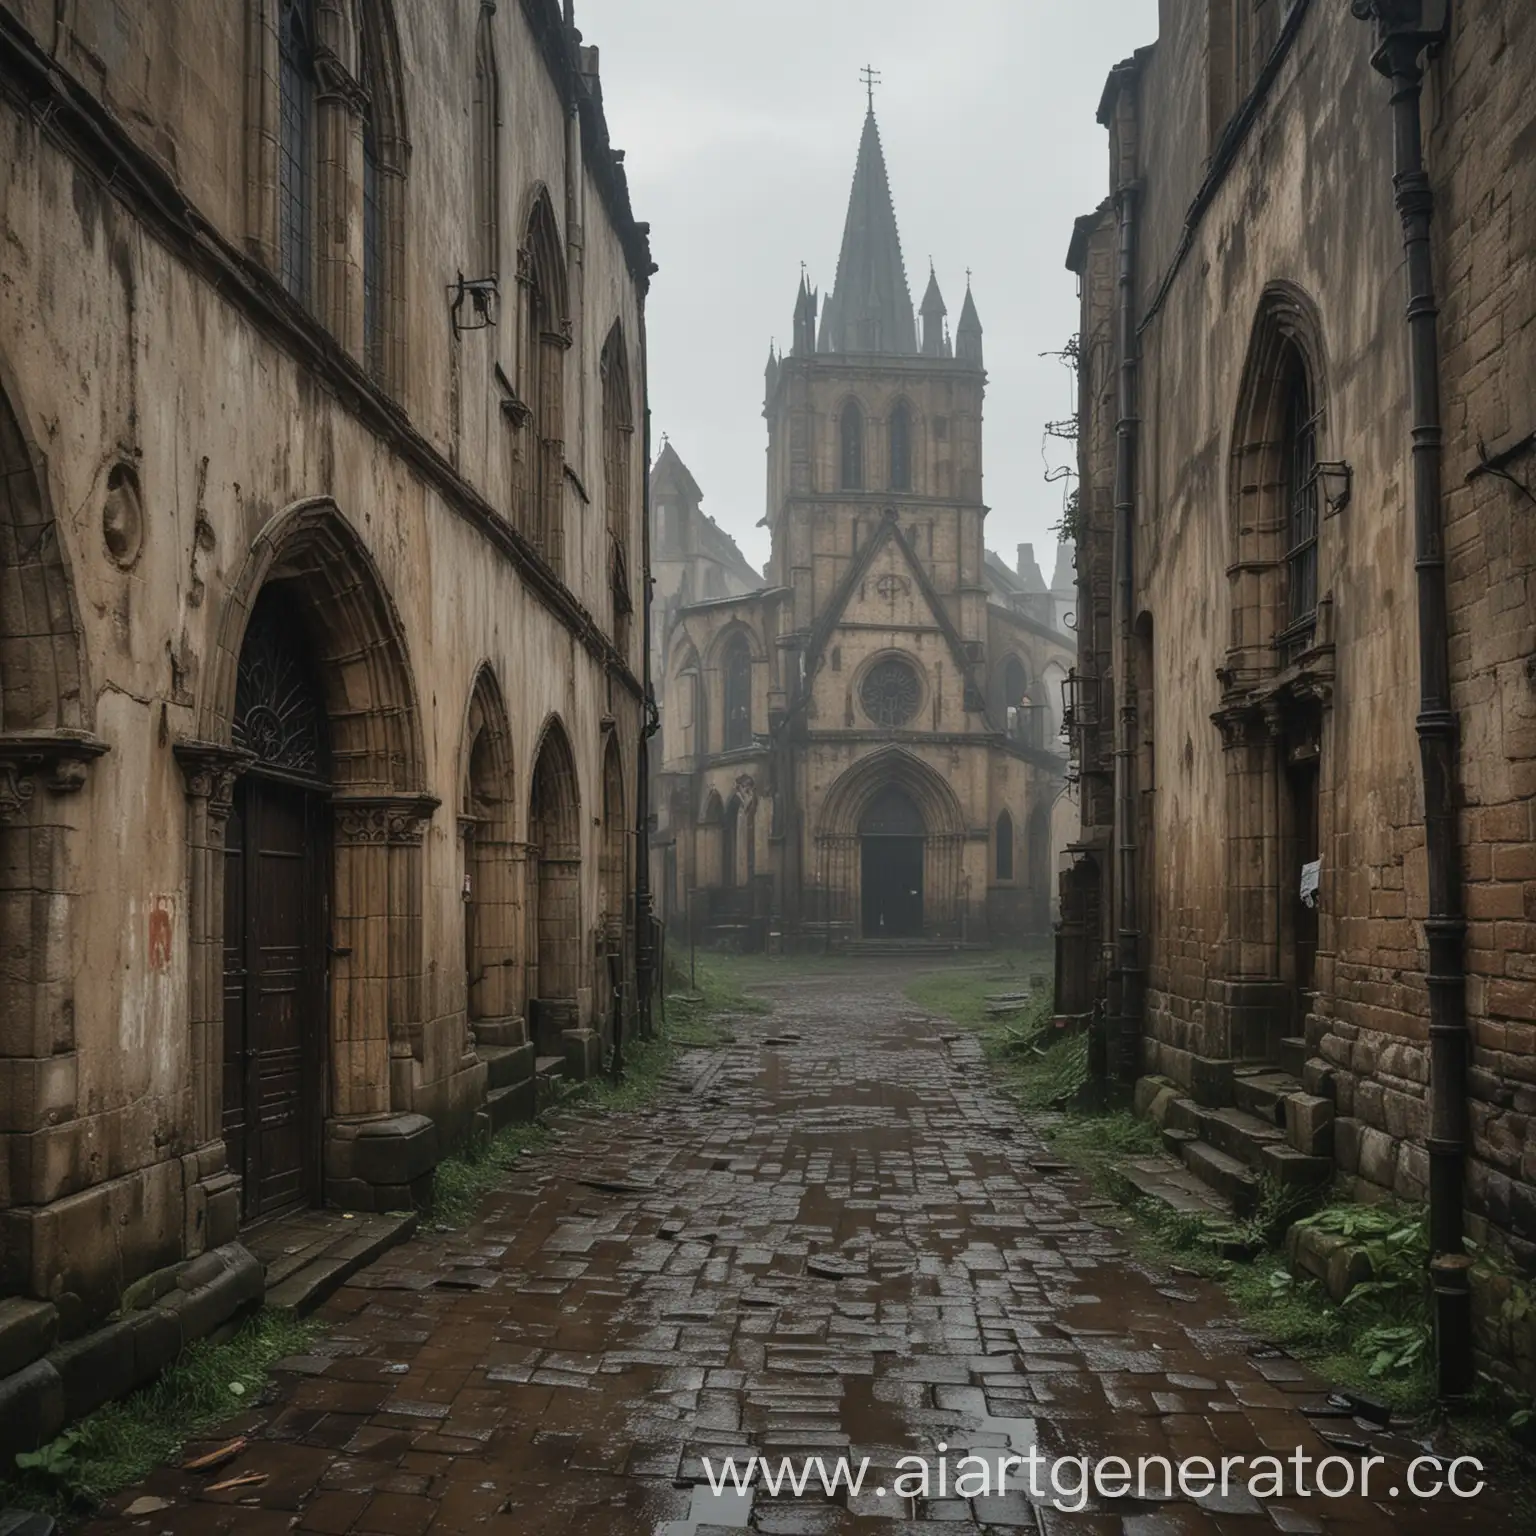 грязный обшарпоный и ветхий церковный район  средневекового города под дождем